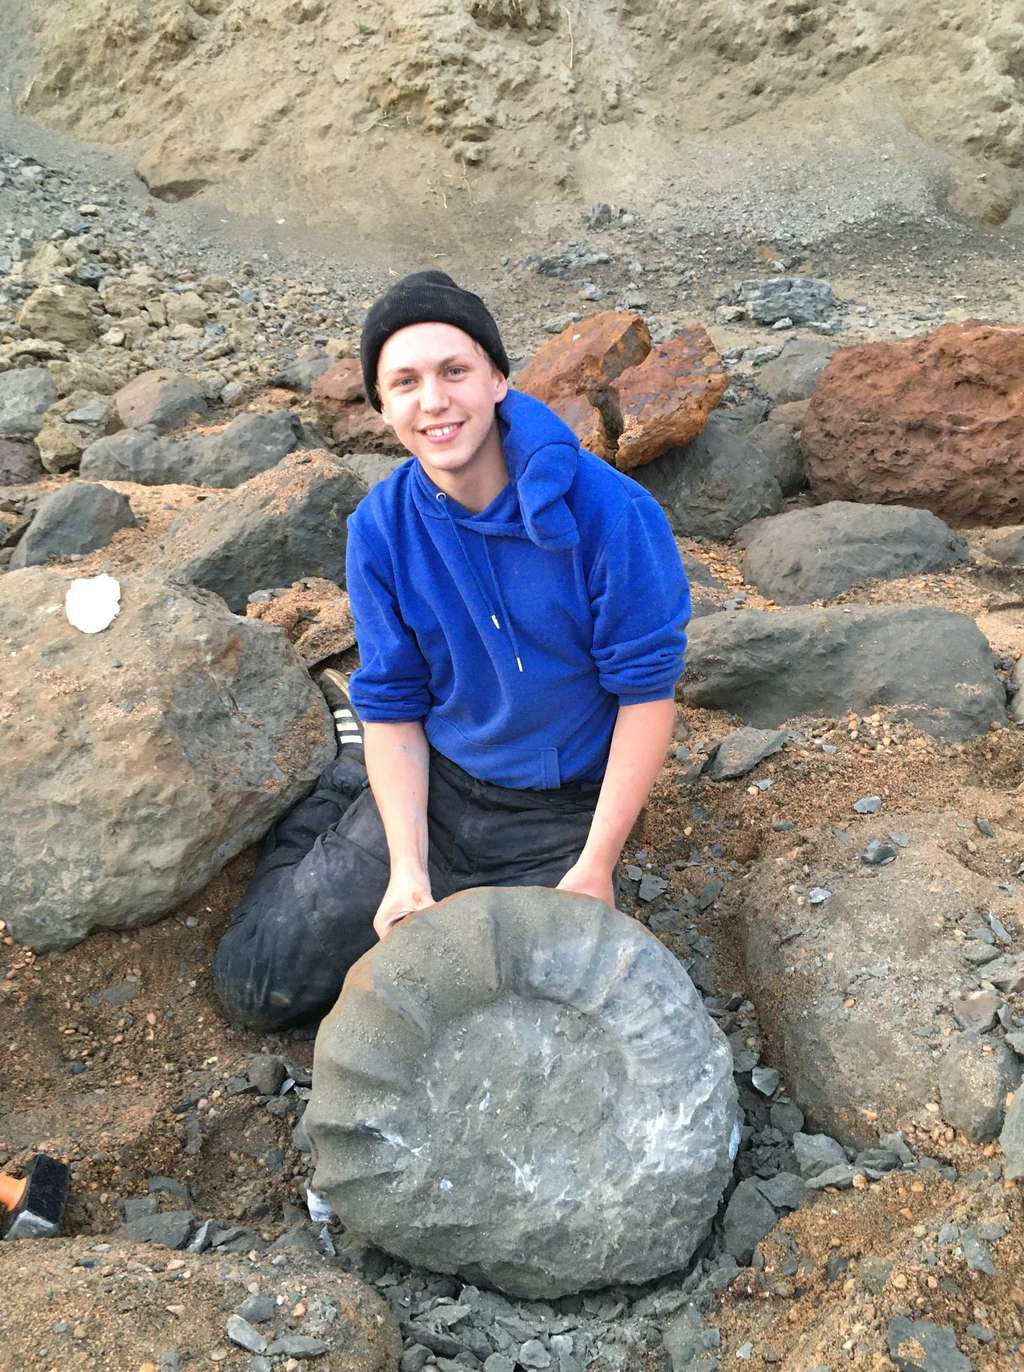 Plus de deux heures de travail ont été nécessaires pour extraire l’ammonite de la roche. © <em>Wight Coast Fossils</em>, Facebook